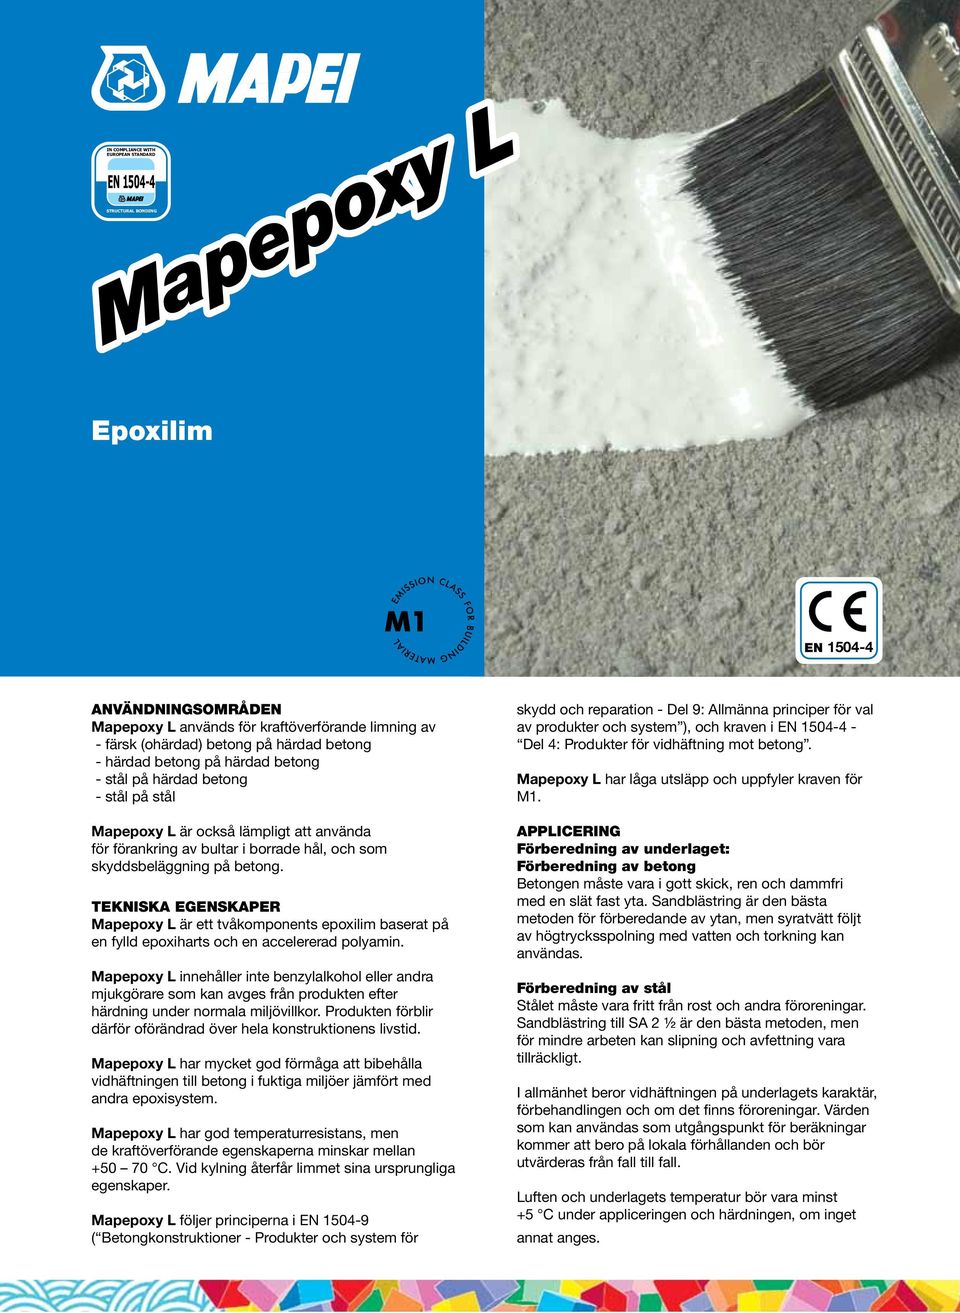 TEKNISKA EGENSKAPER Mapepoxy L är ett tvåkomponents epoxilim baserat på en fylld epoxiharts och en accelererad polyamin.